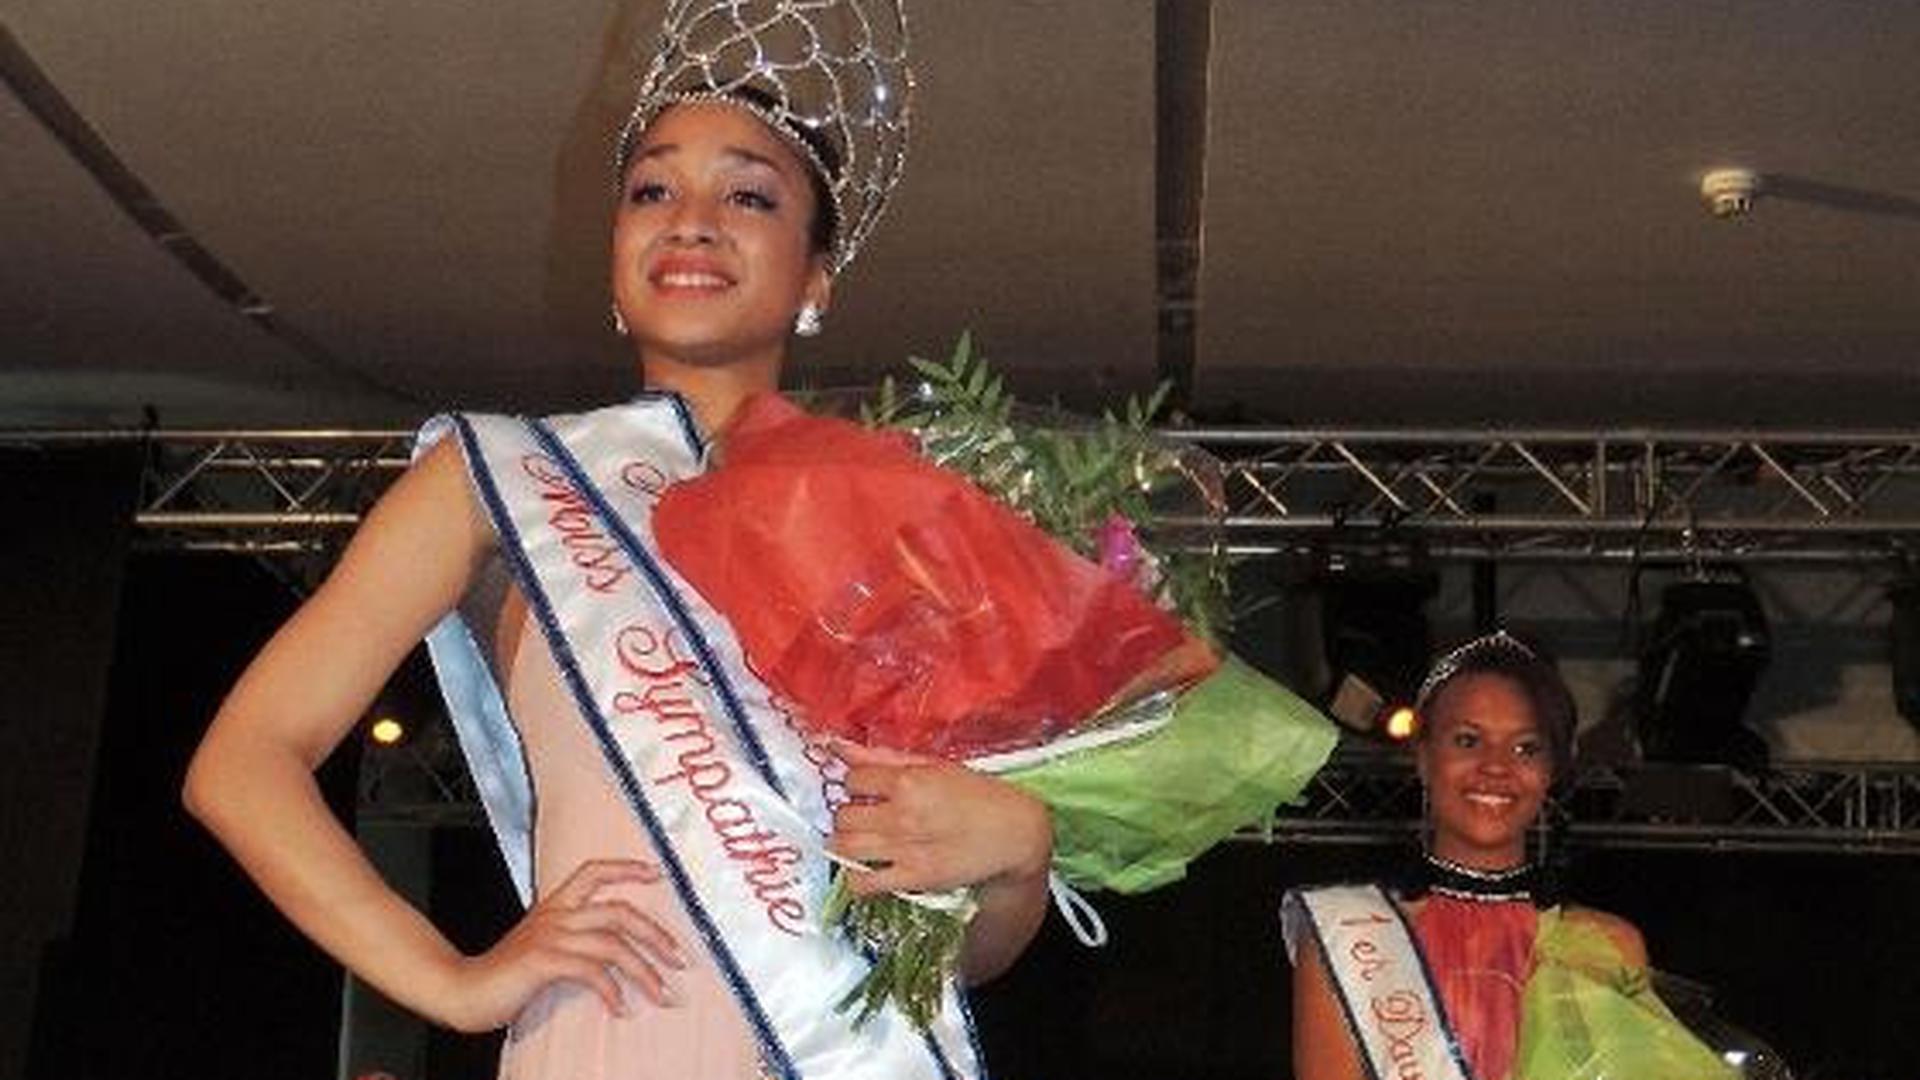 "A beleza vem do interior", diz a nova Miss Global Cabo Verde